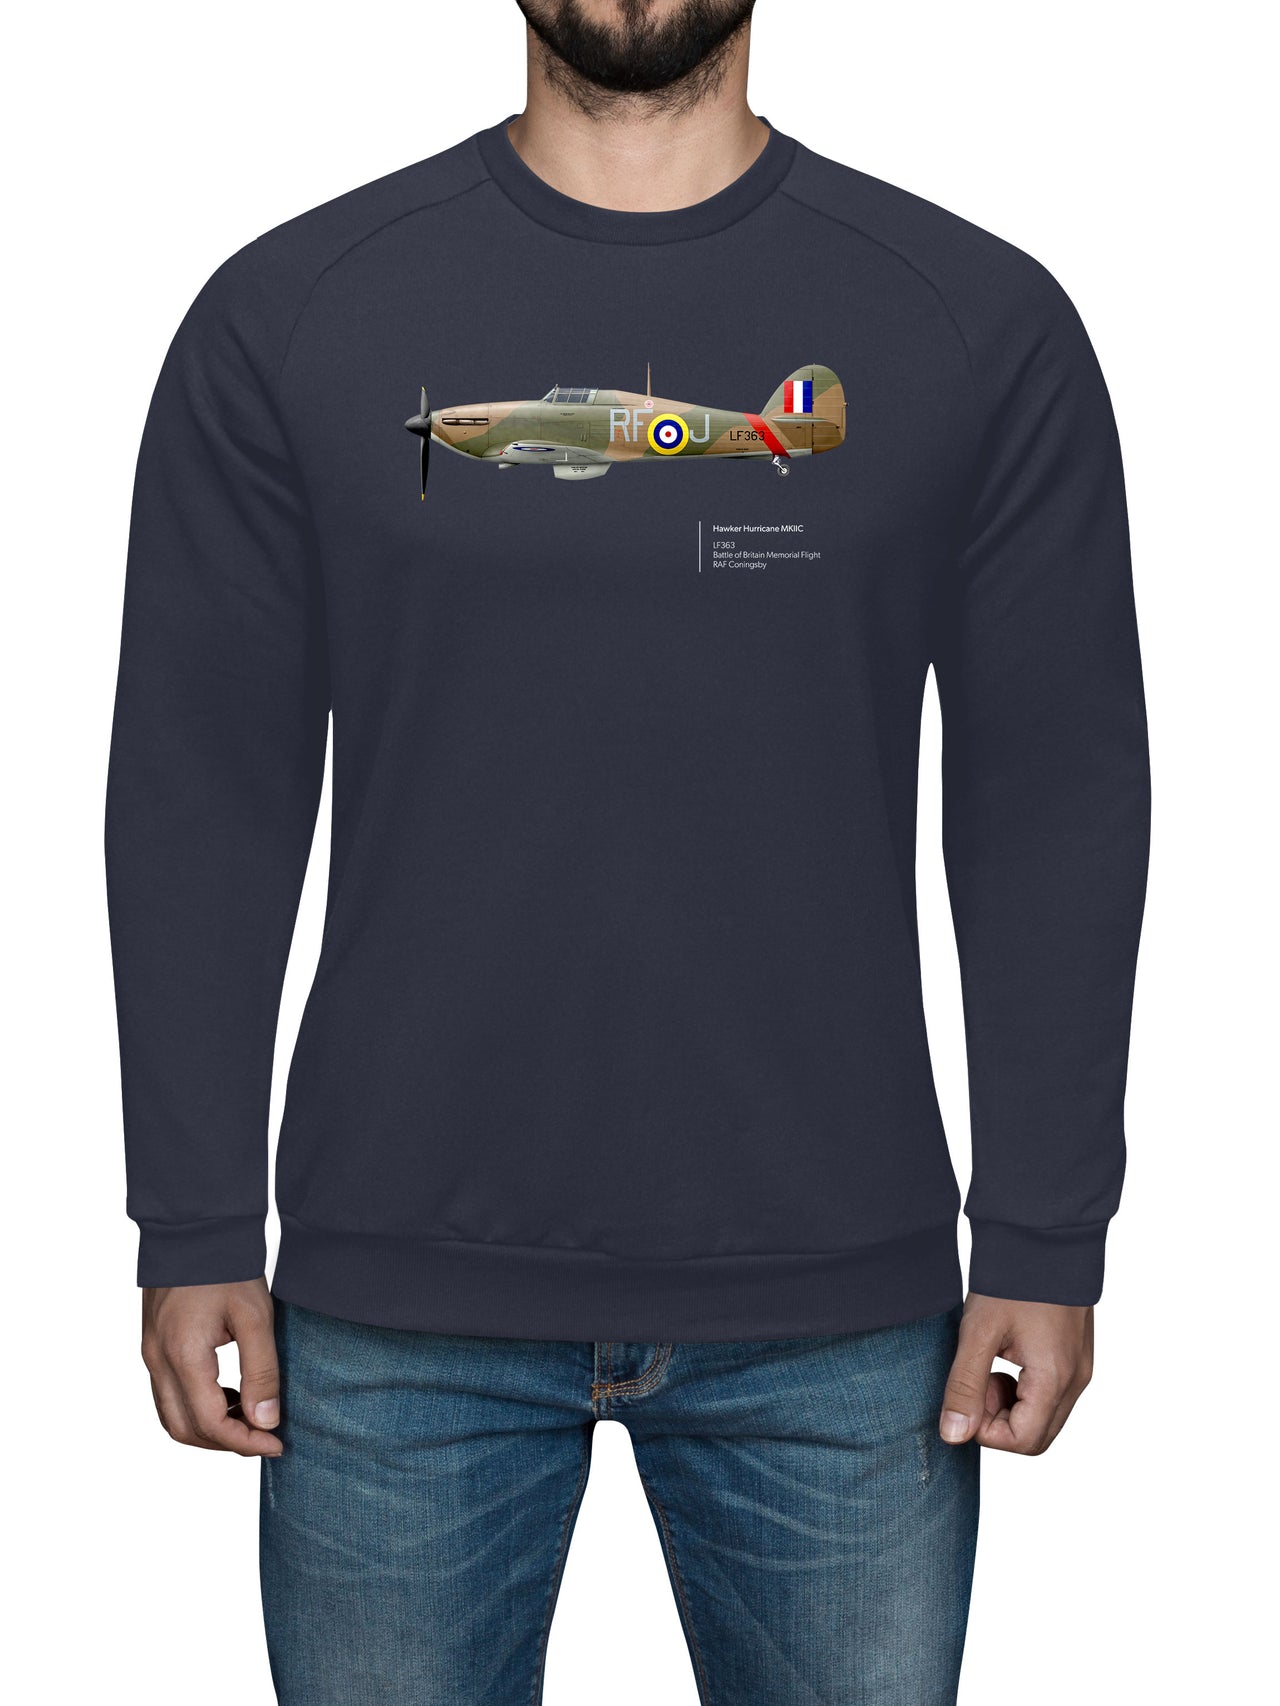 BBMF Hurricane MKIIC - Sweat Shirt